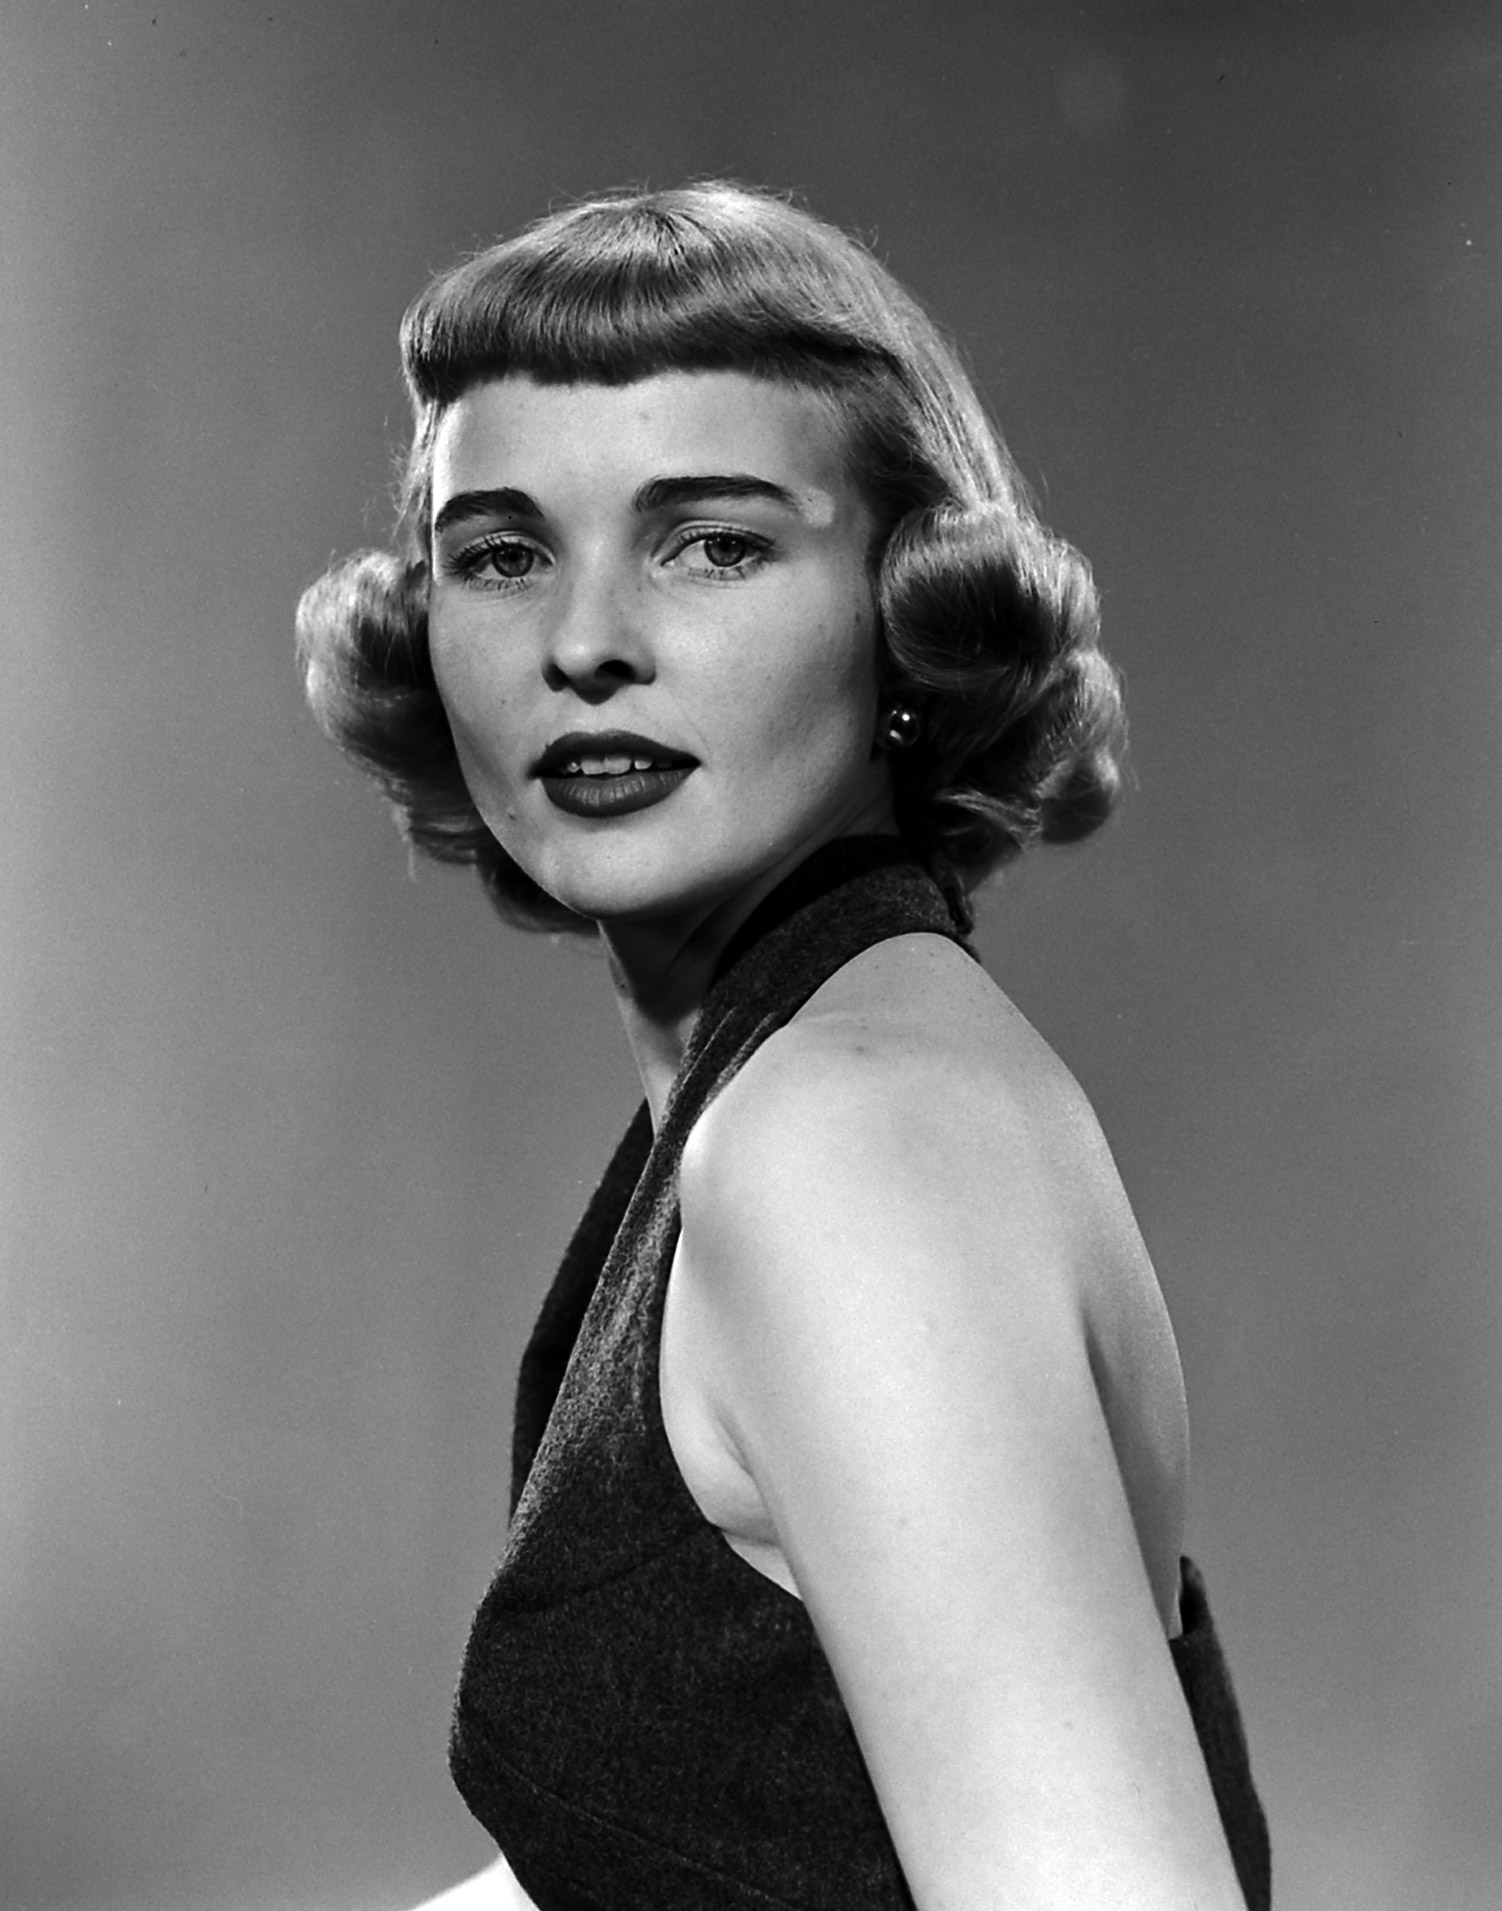 Nell Owen, voted "prettiest school teacher in the U.S." in 1953